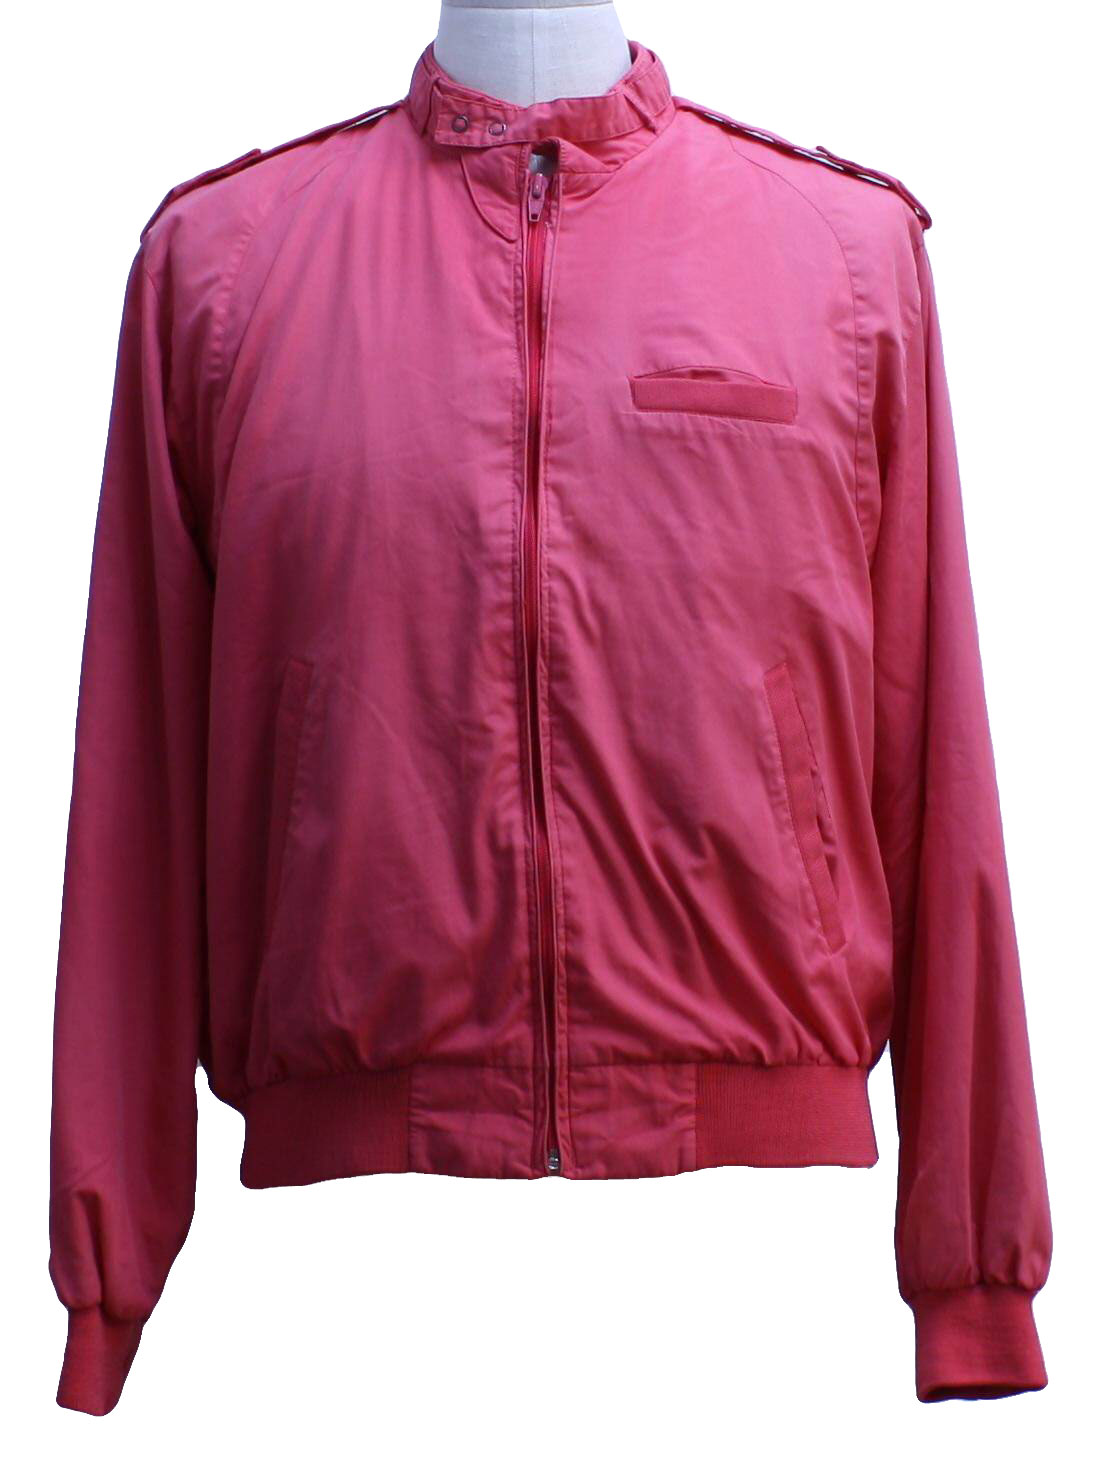 Retro Eighties Jacket: 80s -Peter England- Mens dark pink cotton ...